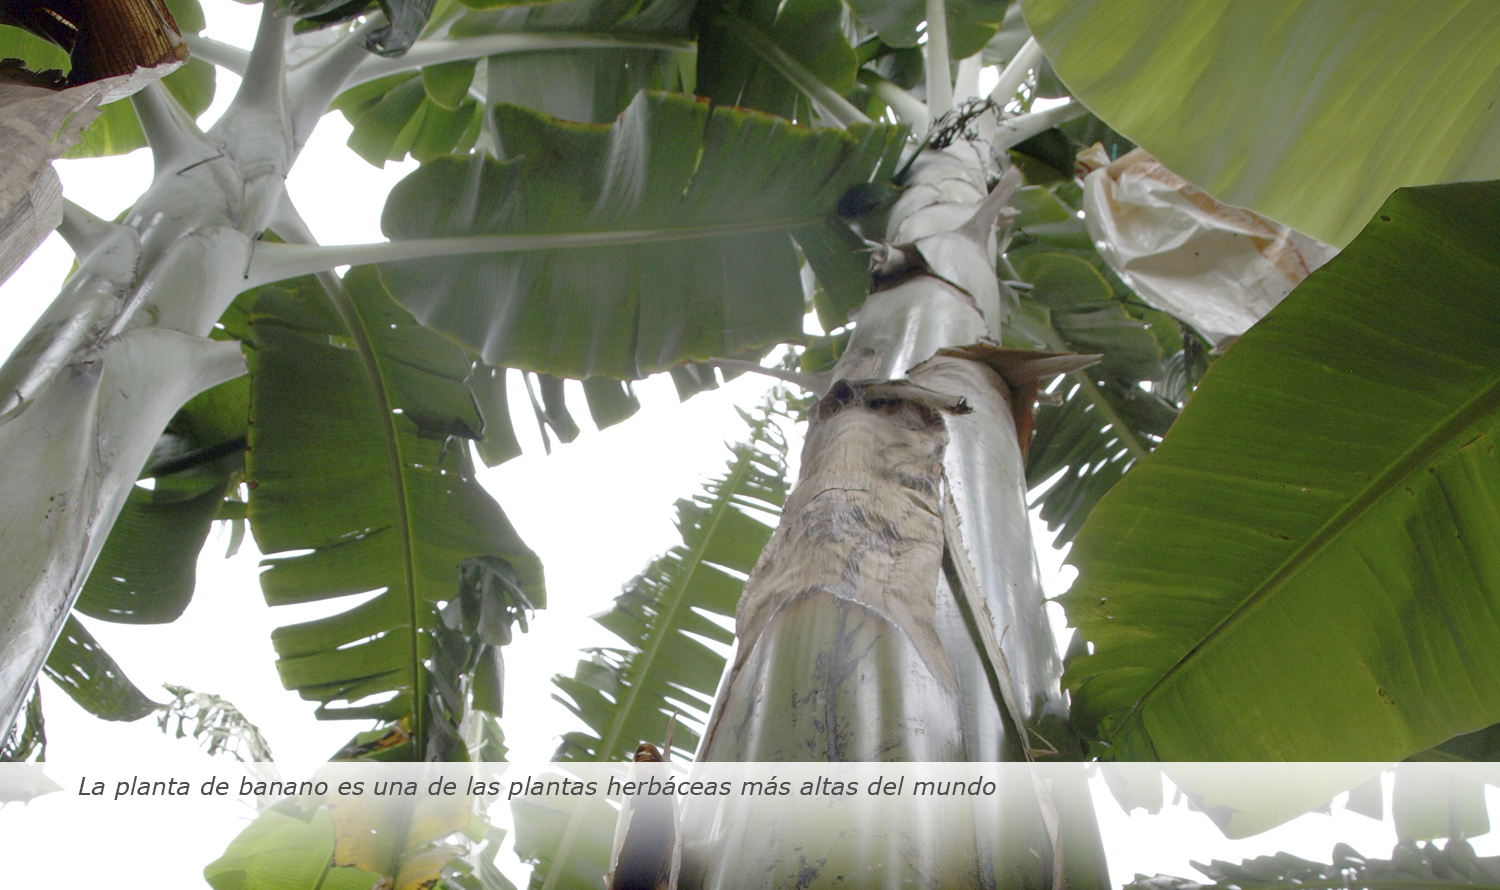 La planta de banano es una de las plantas herbáceas más altas del mundo